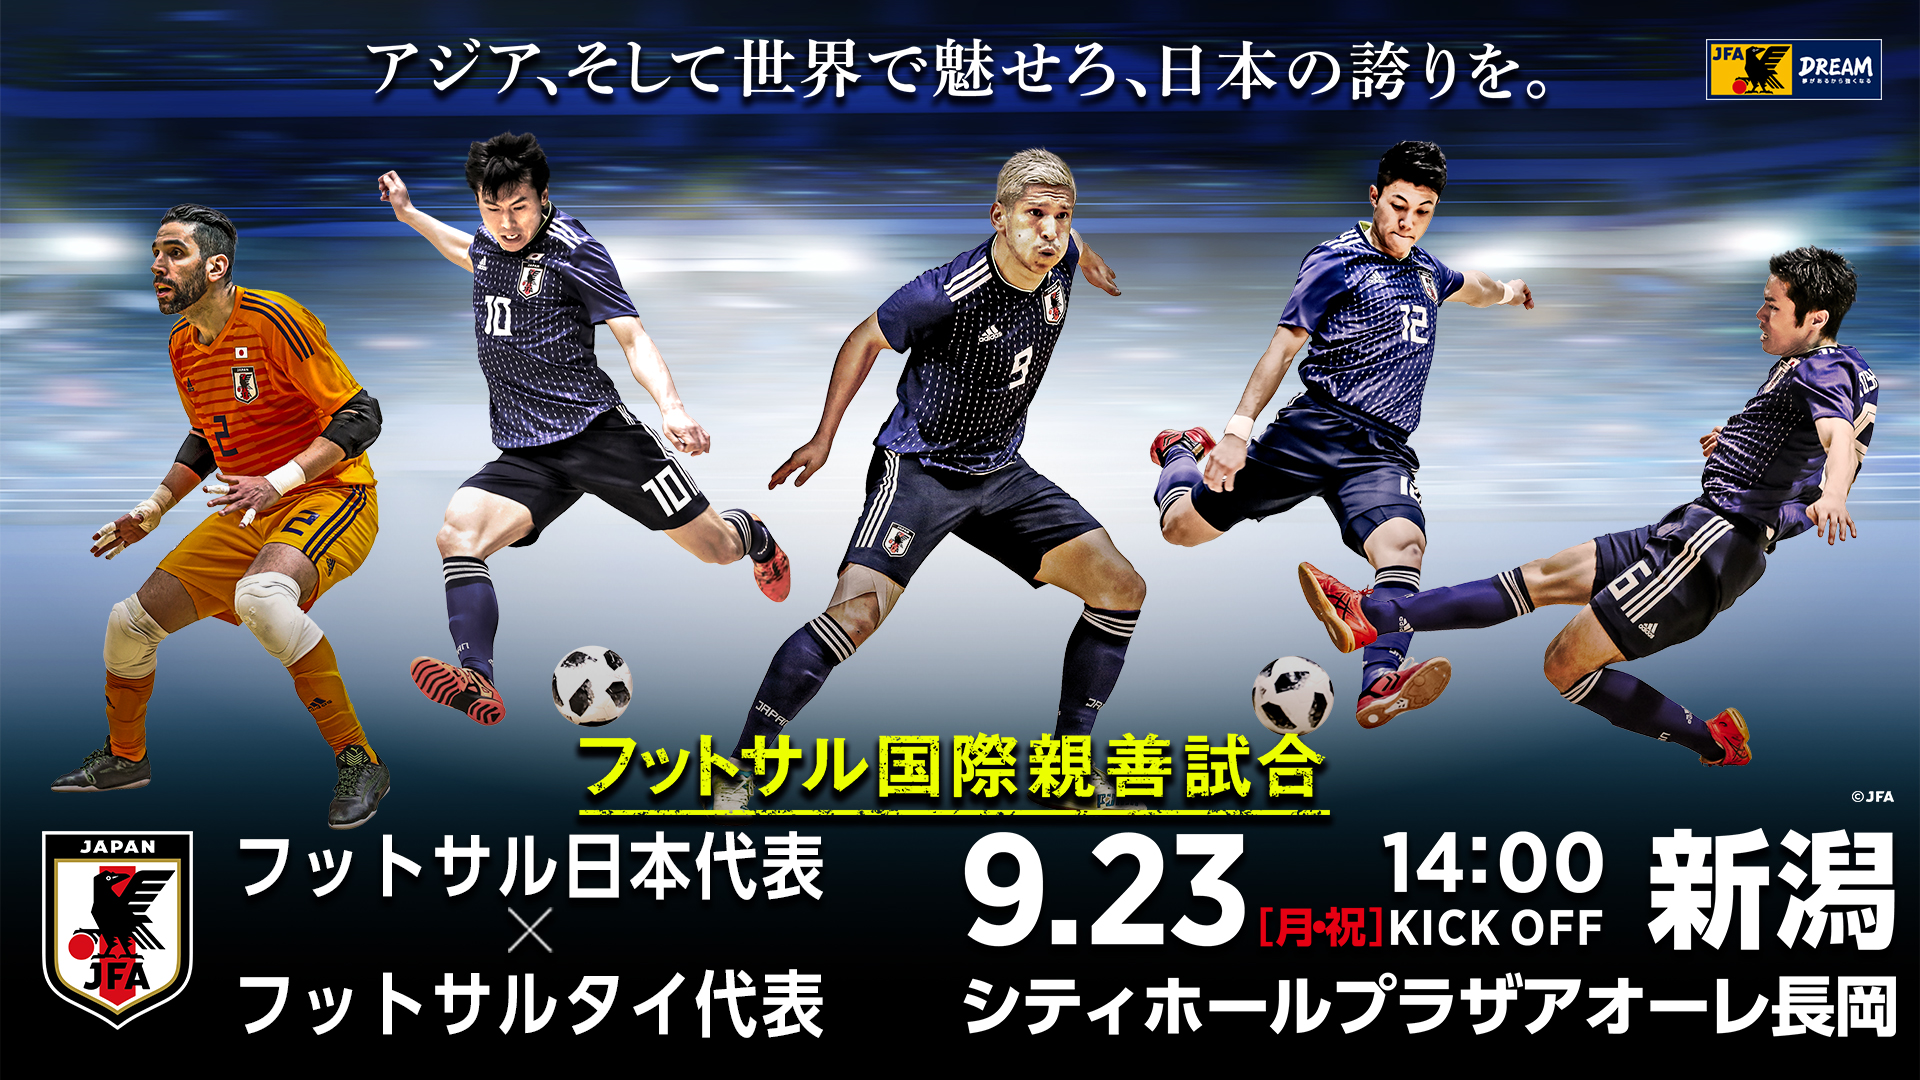 9月23日 月 祝 フットサル国際親善試合 一般社団法人新潟県サッカー協会